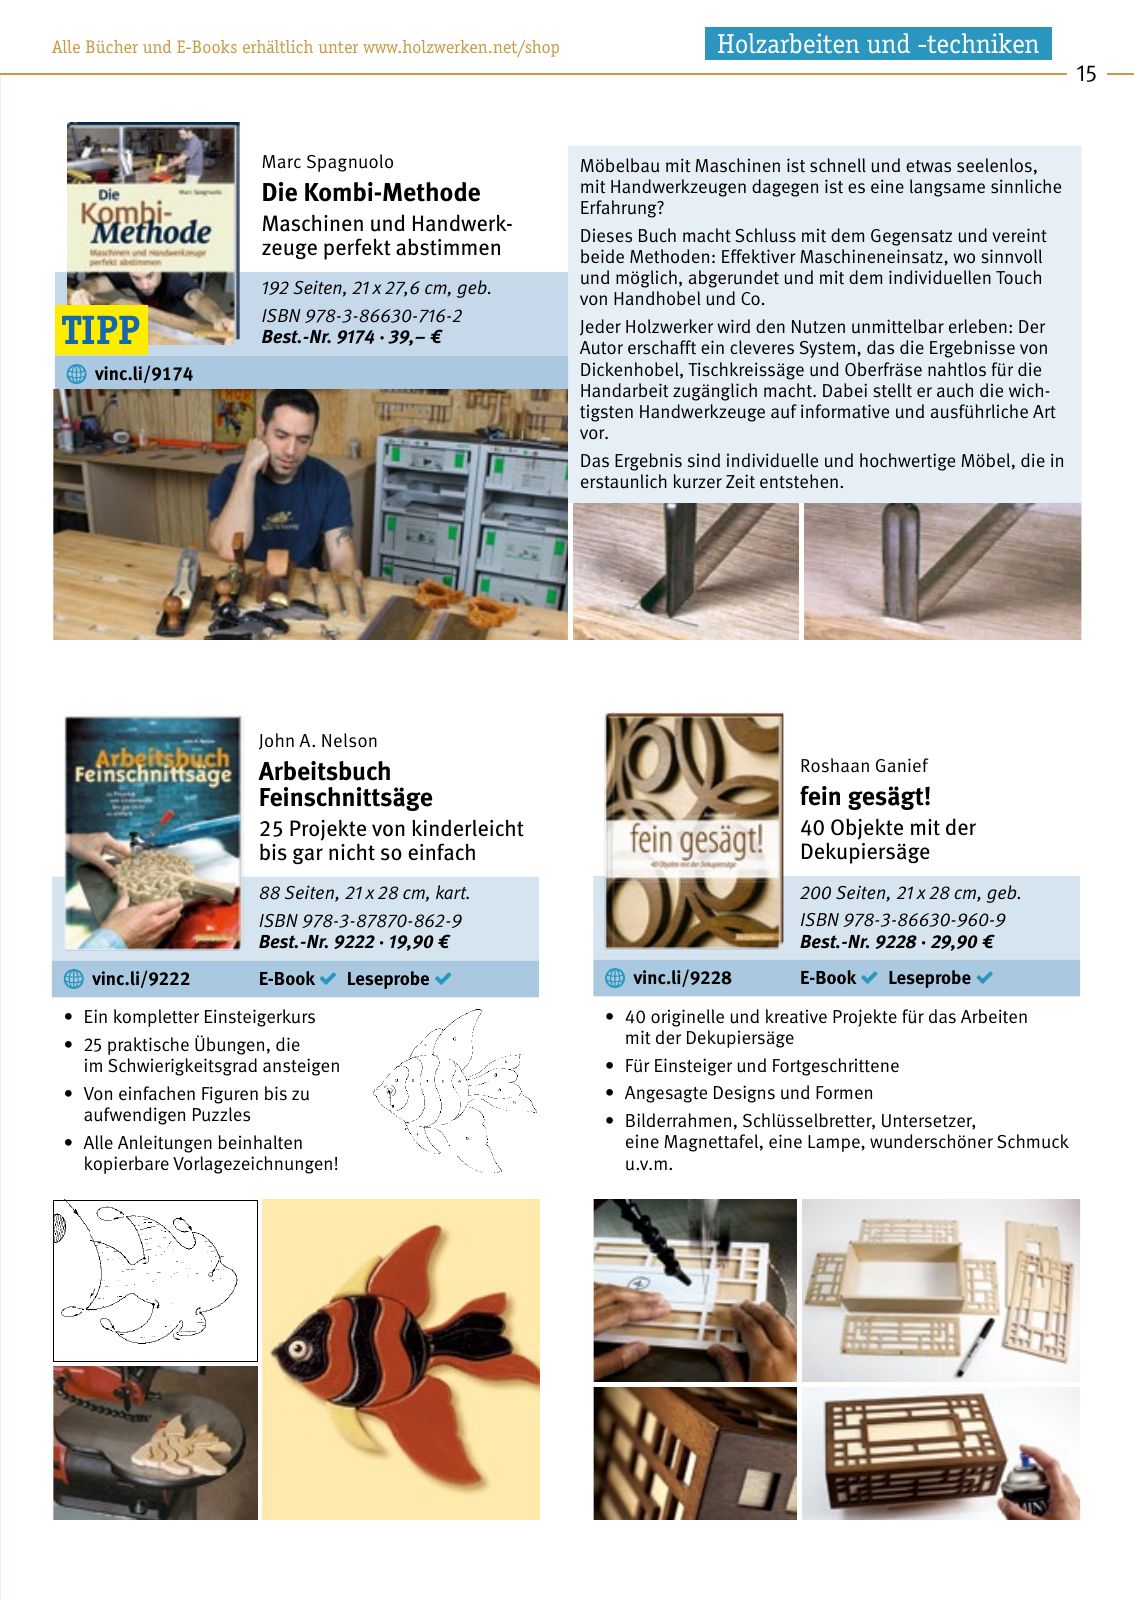 Vorschau HolzWerken Katalog 2019 Seite 15